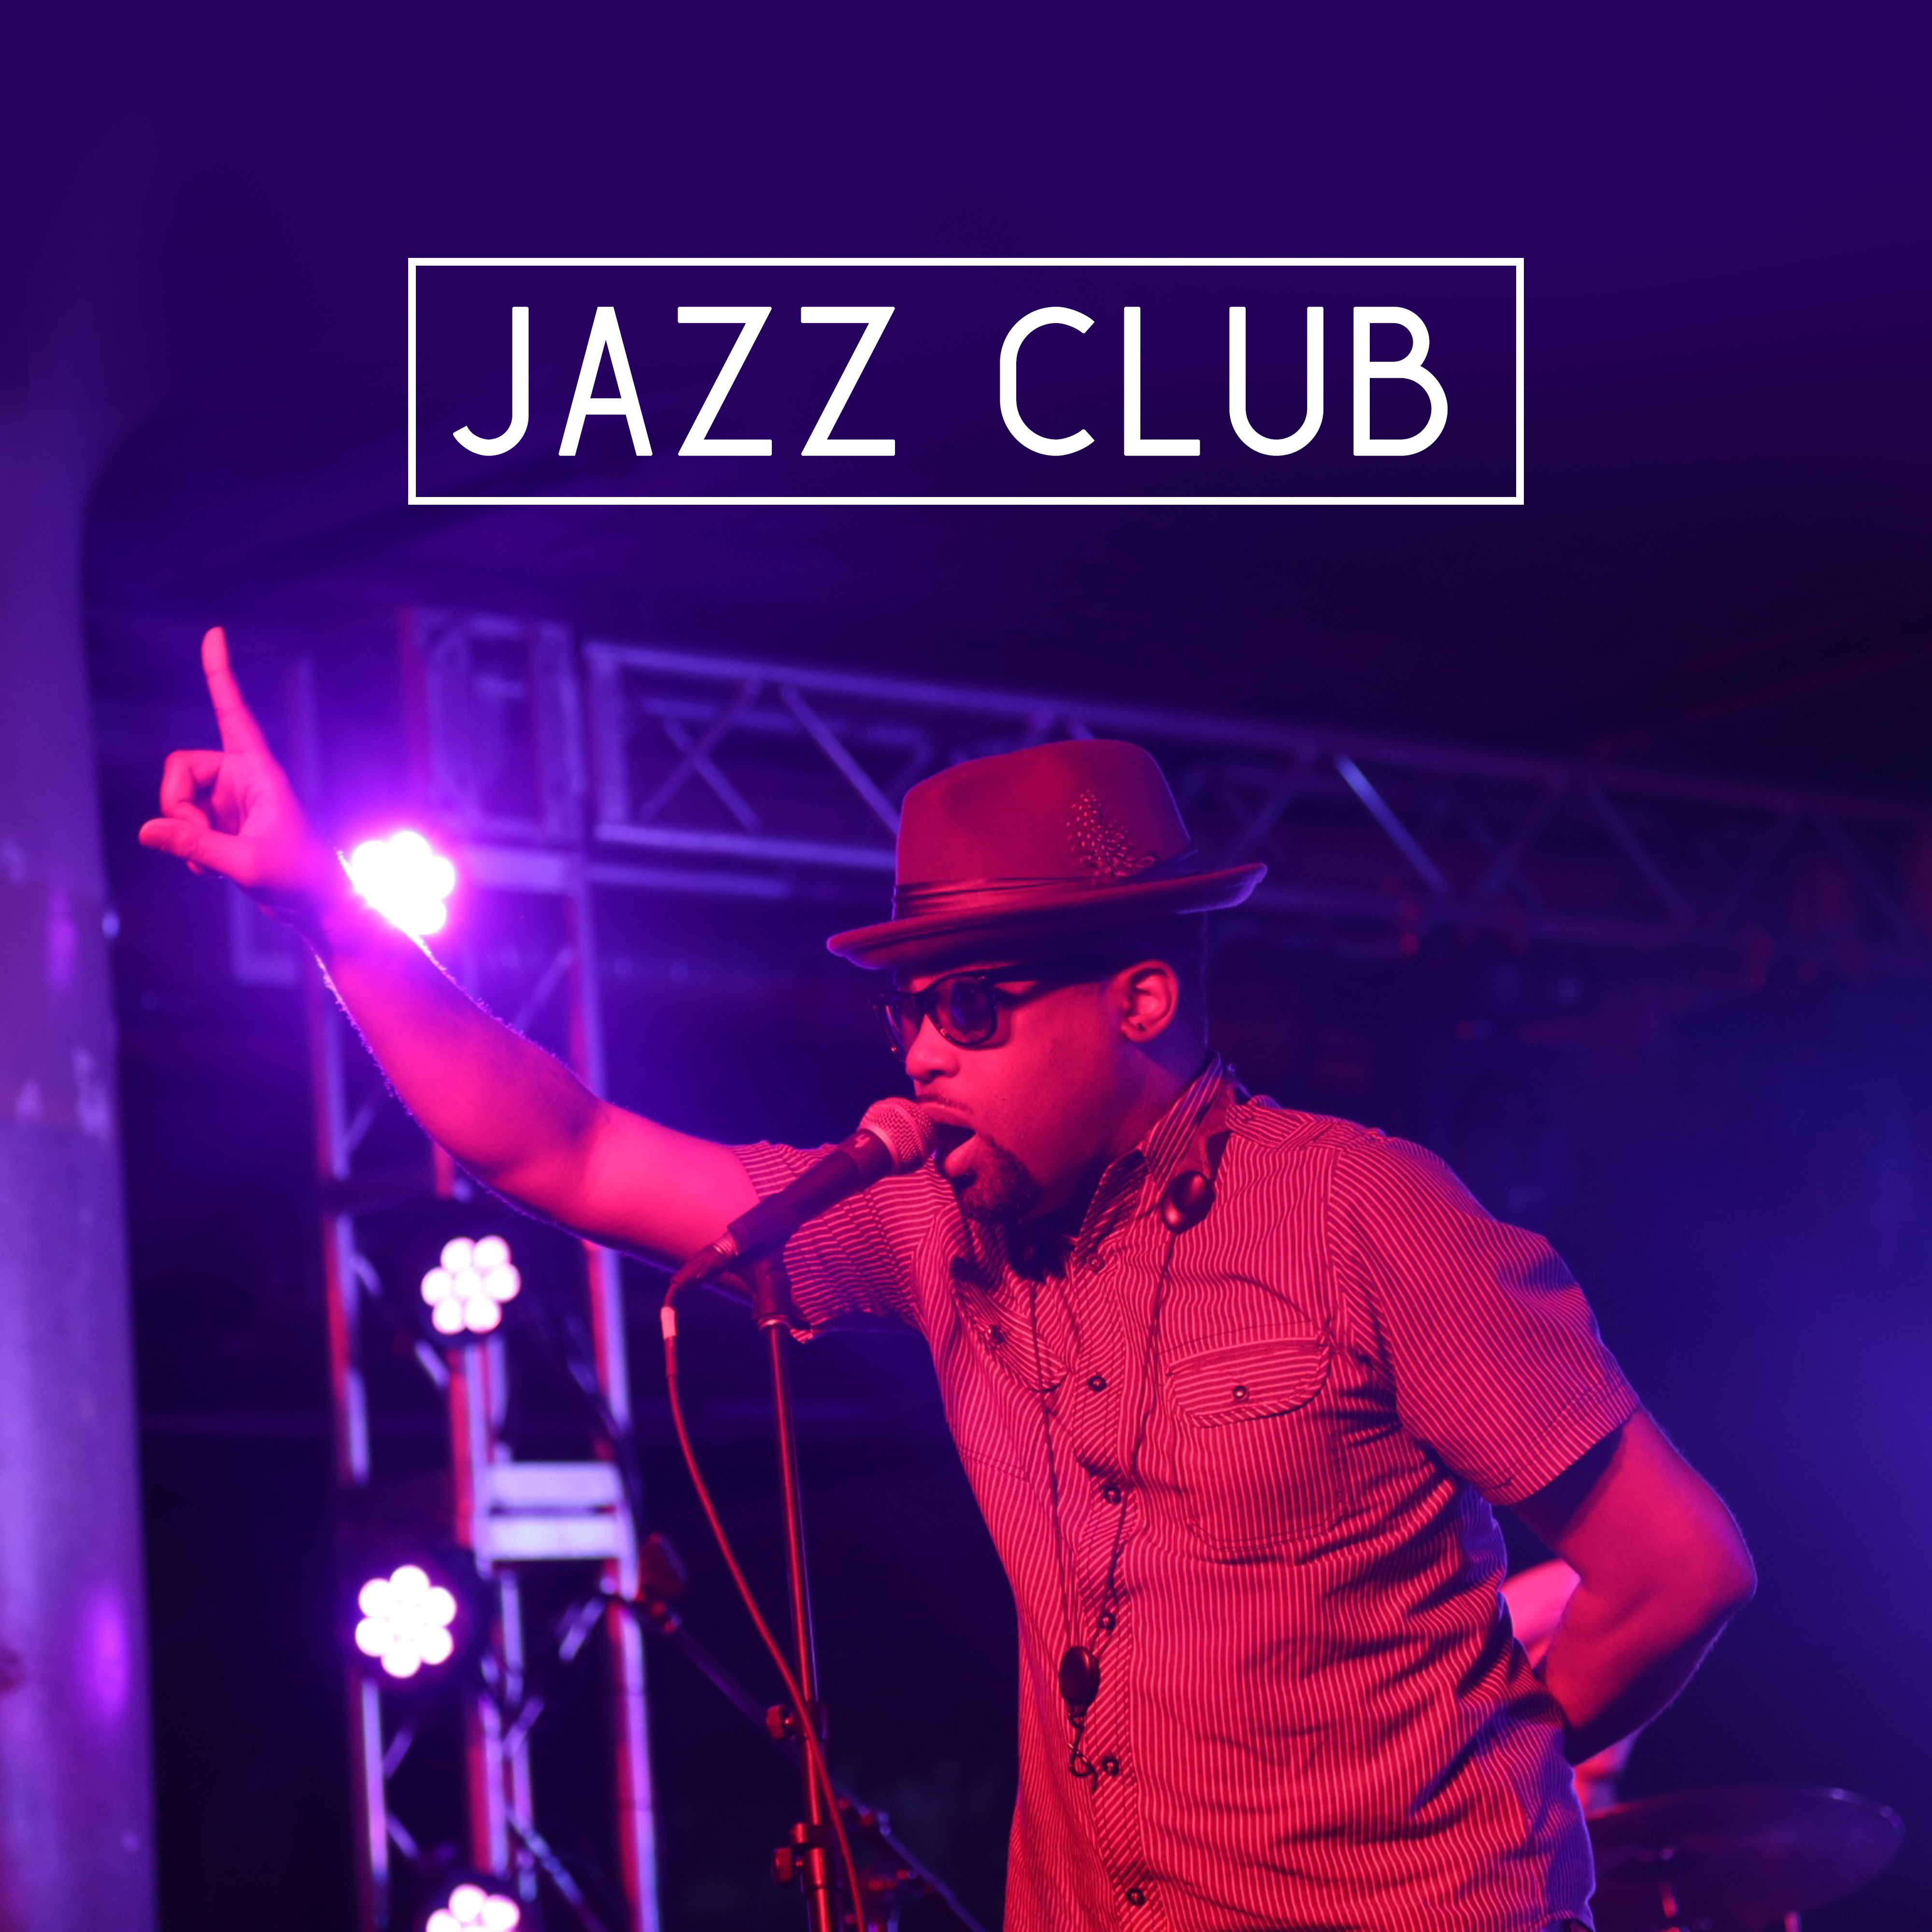 Jazz Club  Jazz for Club, Bar, Restaurant, Cafe, Most Sounds of Instrumental